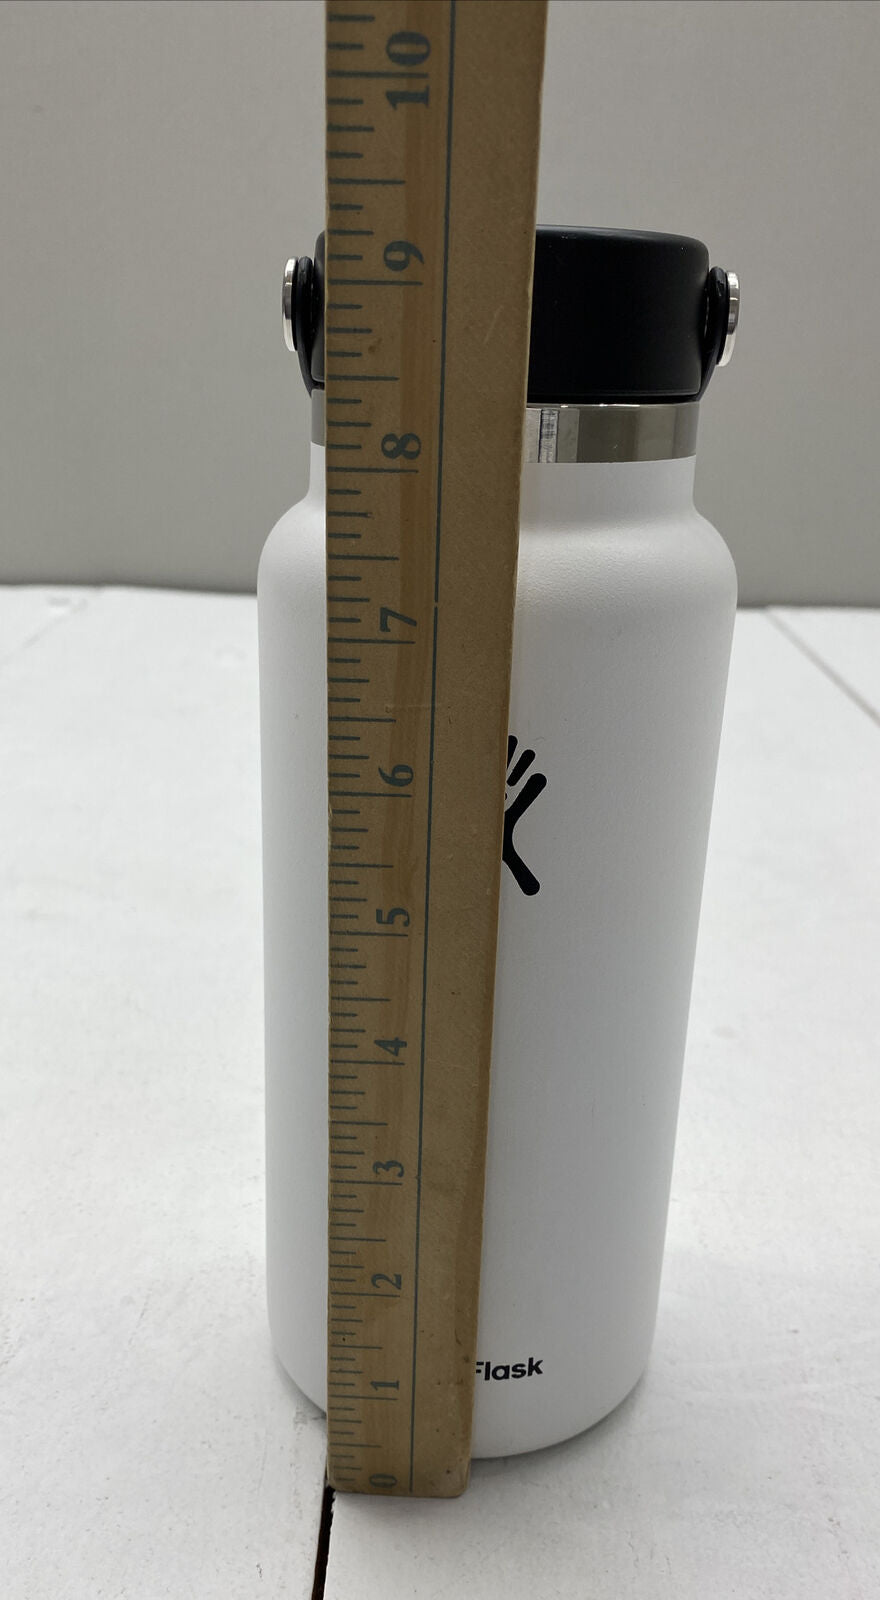 NAISMA Hydroflask Water Bottle- 32oz. Widemouth